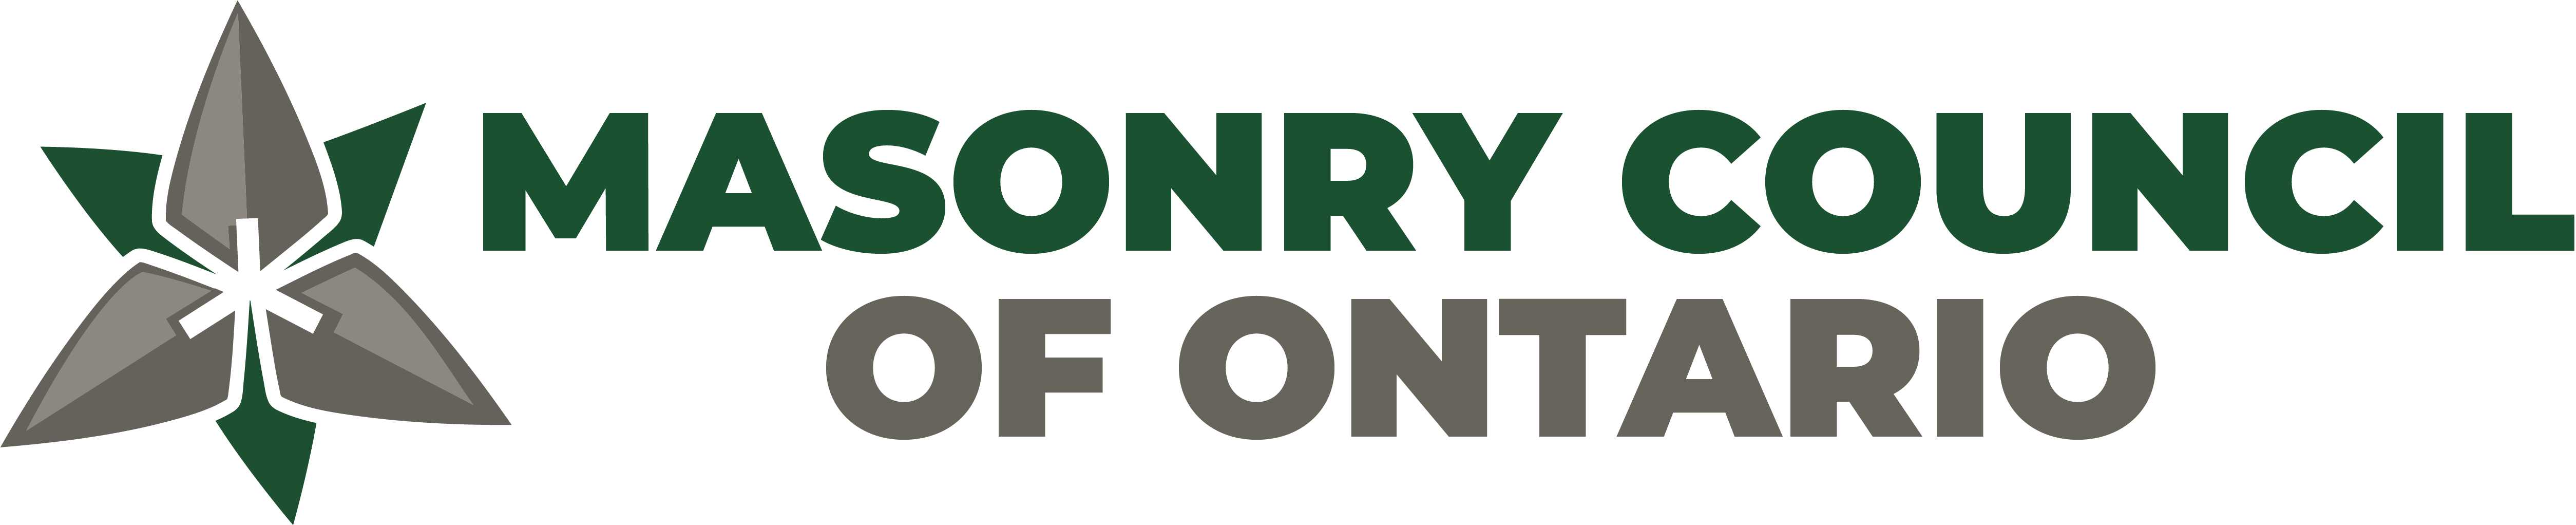 Masonry Council of Ontario